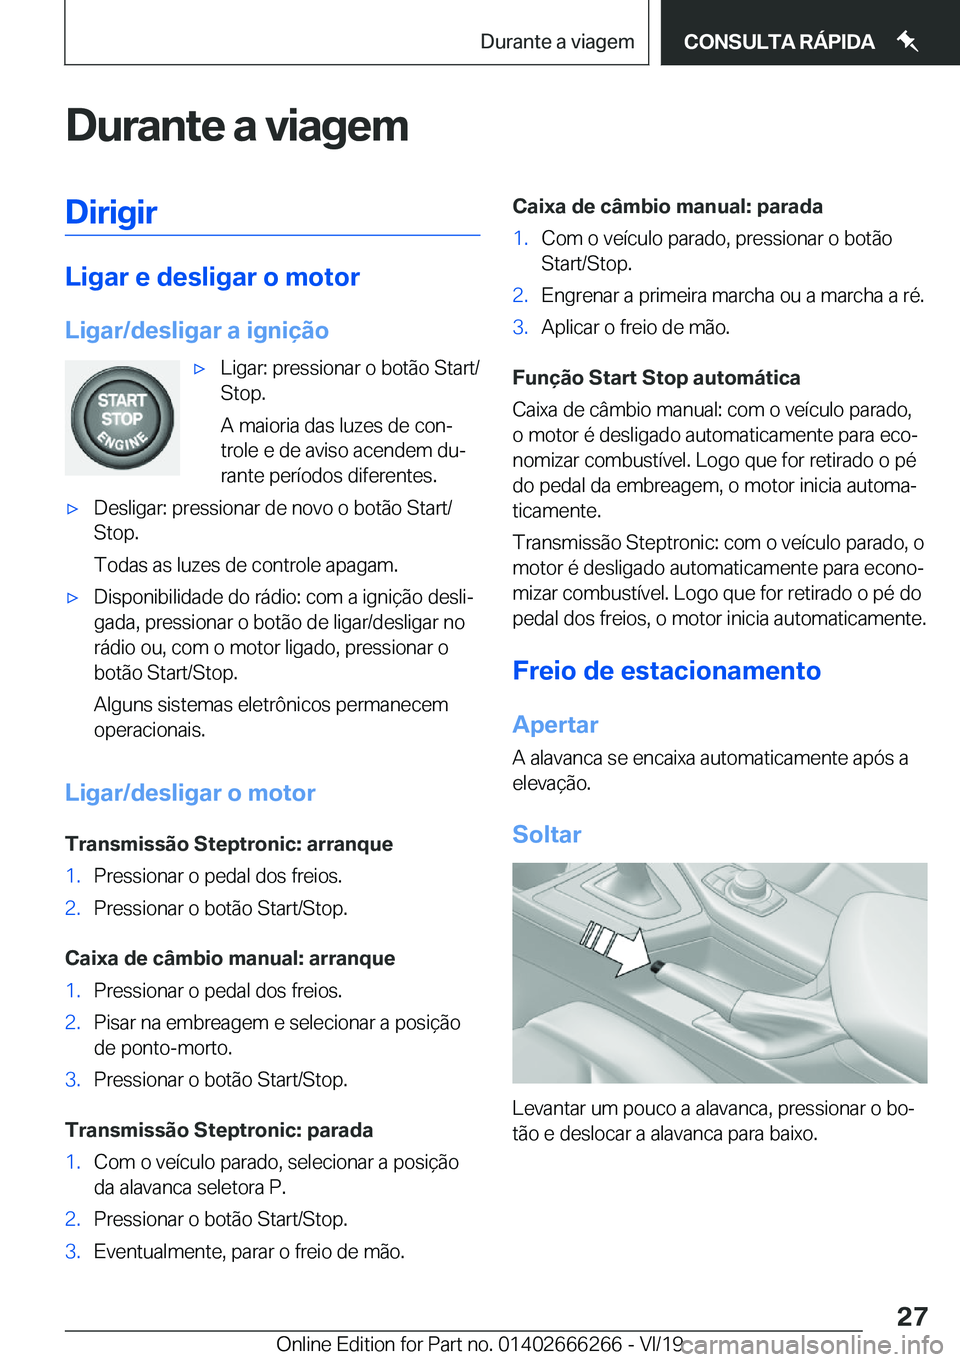 BMW 2 SERIES COUPE 2020  Manual do condutor (in Portuguese) �D�u�r�a�n�t�e��a��v�i�a�g�e�m�D�i�r�i�g�i�r
�L�i�g�a�r��e��d�e�s�l�i�g�a�r��o��m�o�t�o�r
�L�i�g�a�r�/�d�e�s�l�i�g�a�r��a��i�g�n�i�